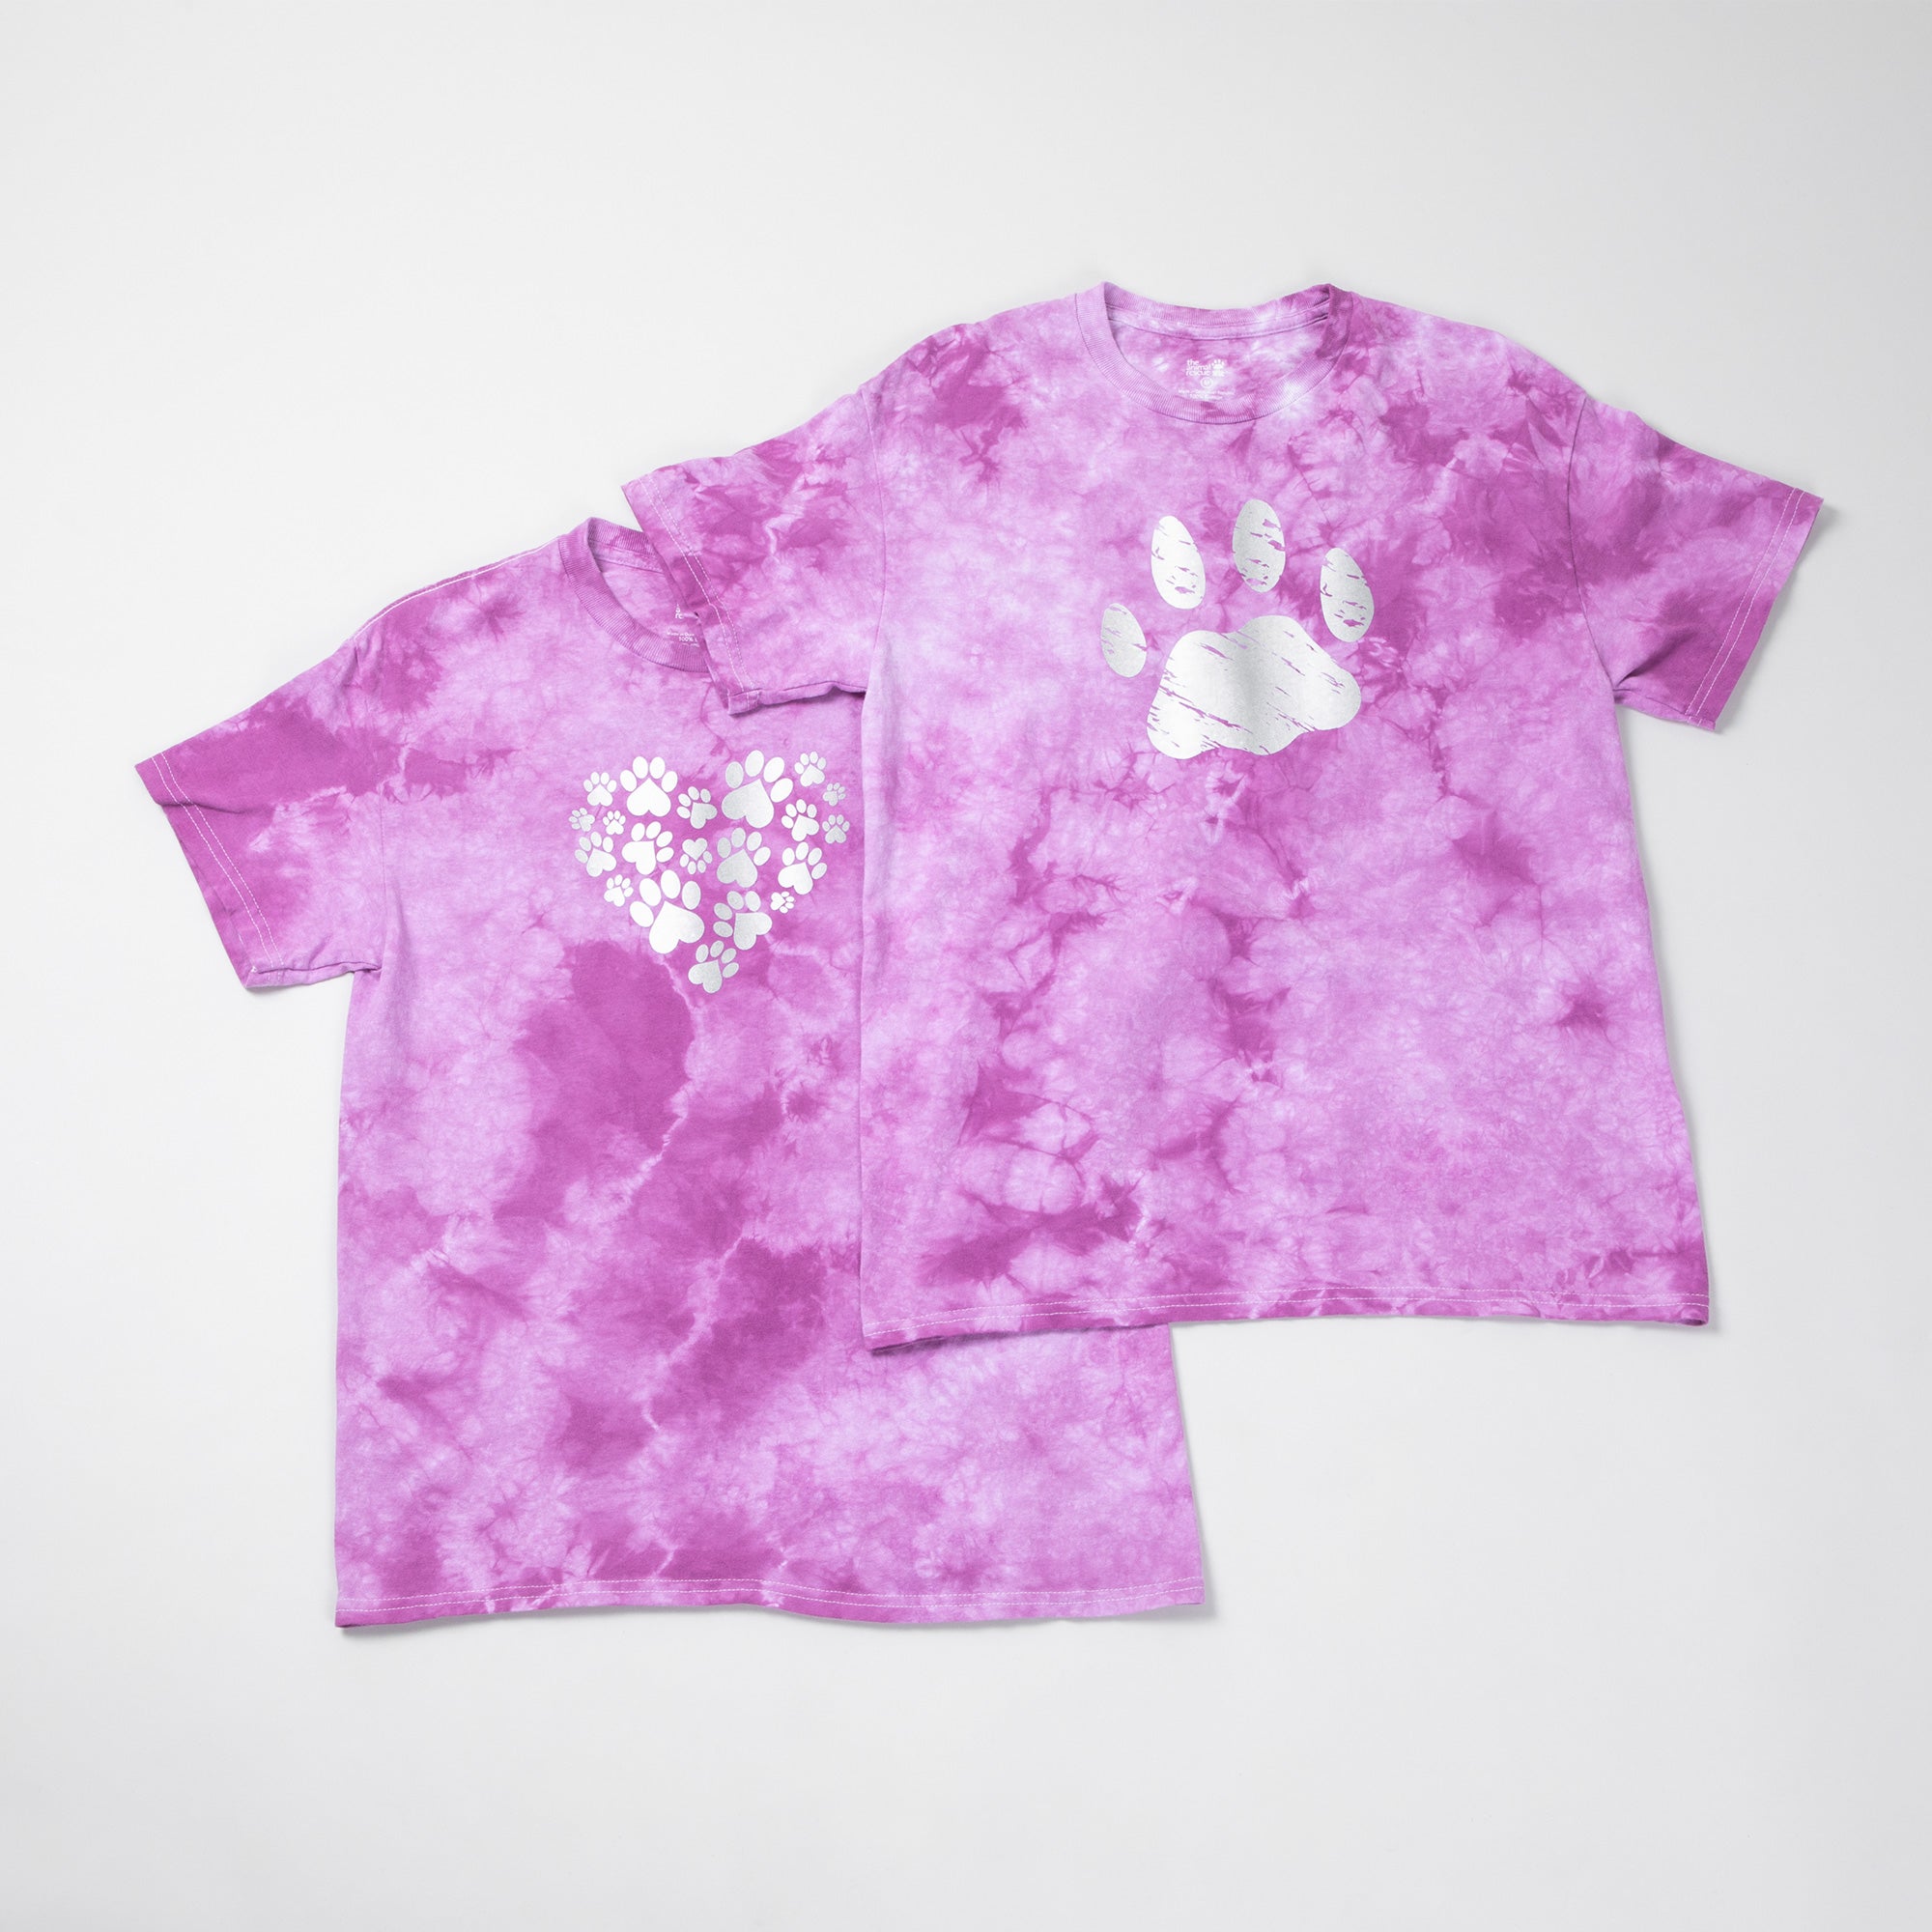 Paw Print Boysenberry Tie-Dye T-Shirt - Heart Paws - M